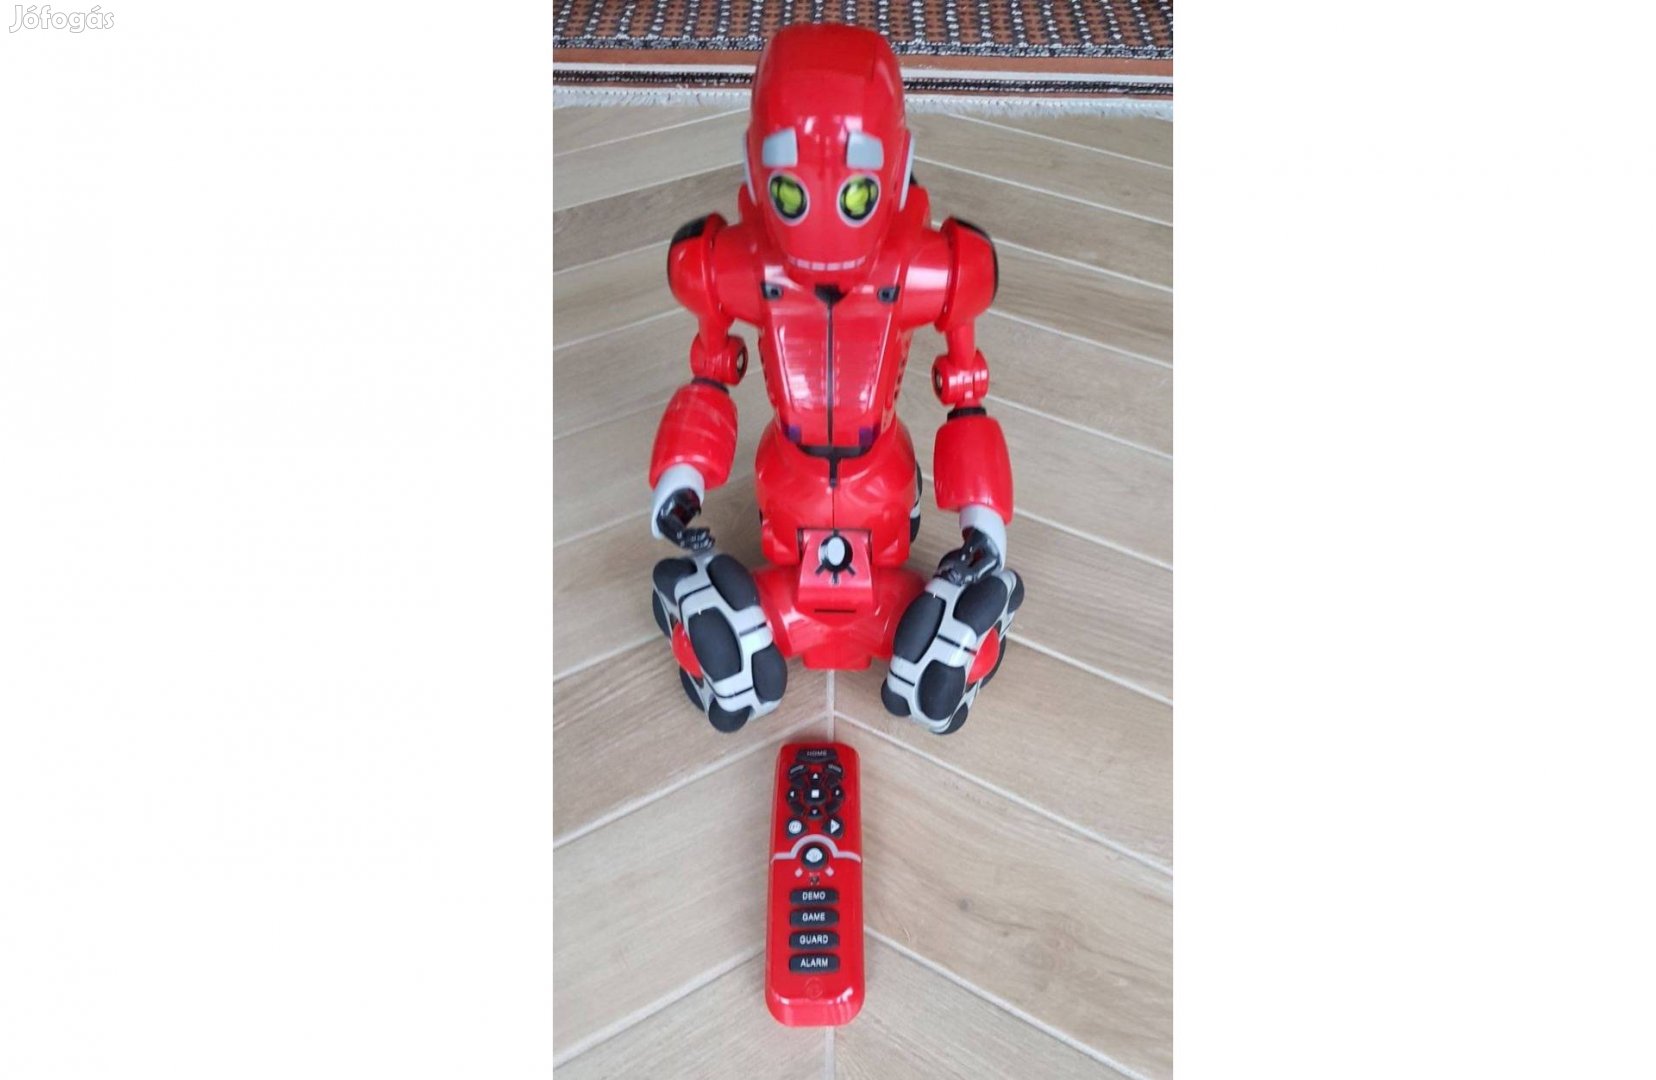 Wowwee Tribot robot